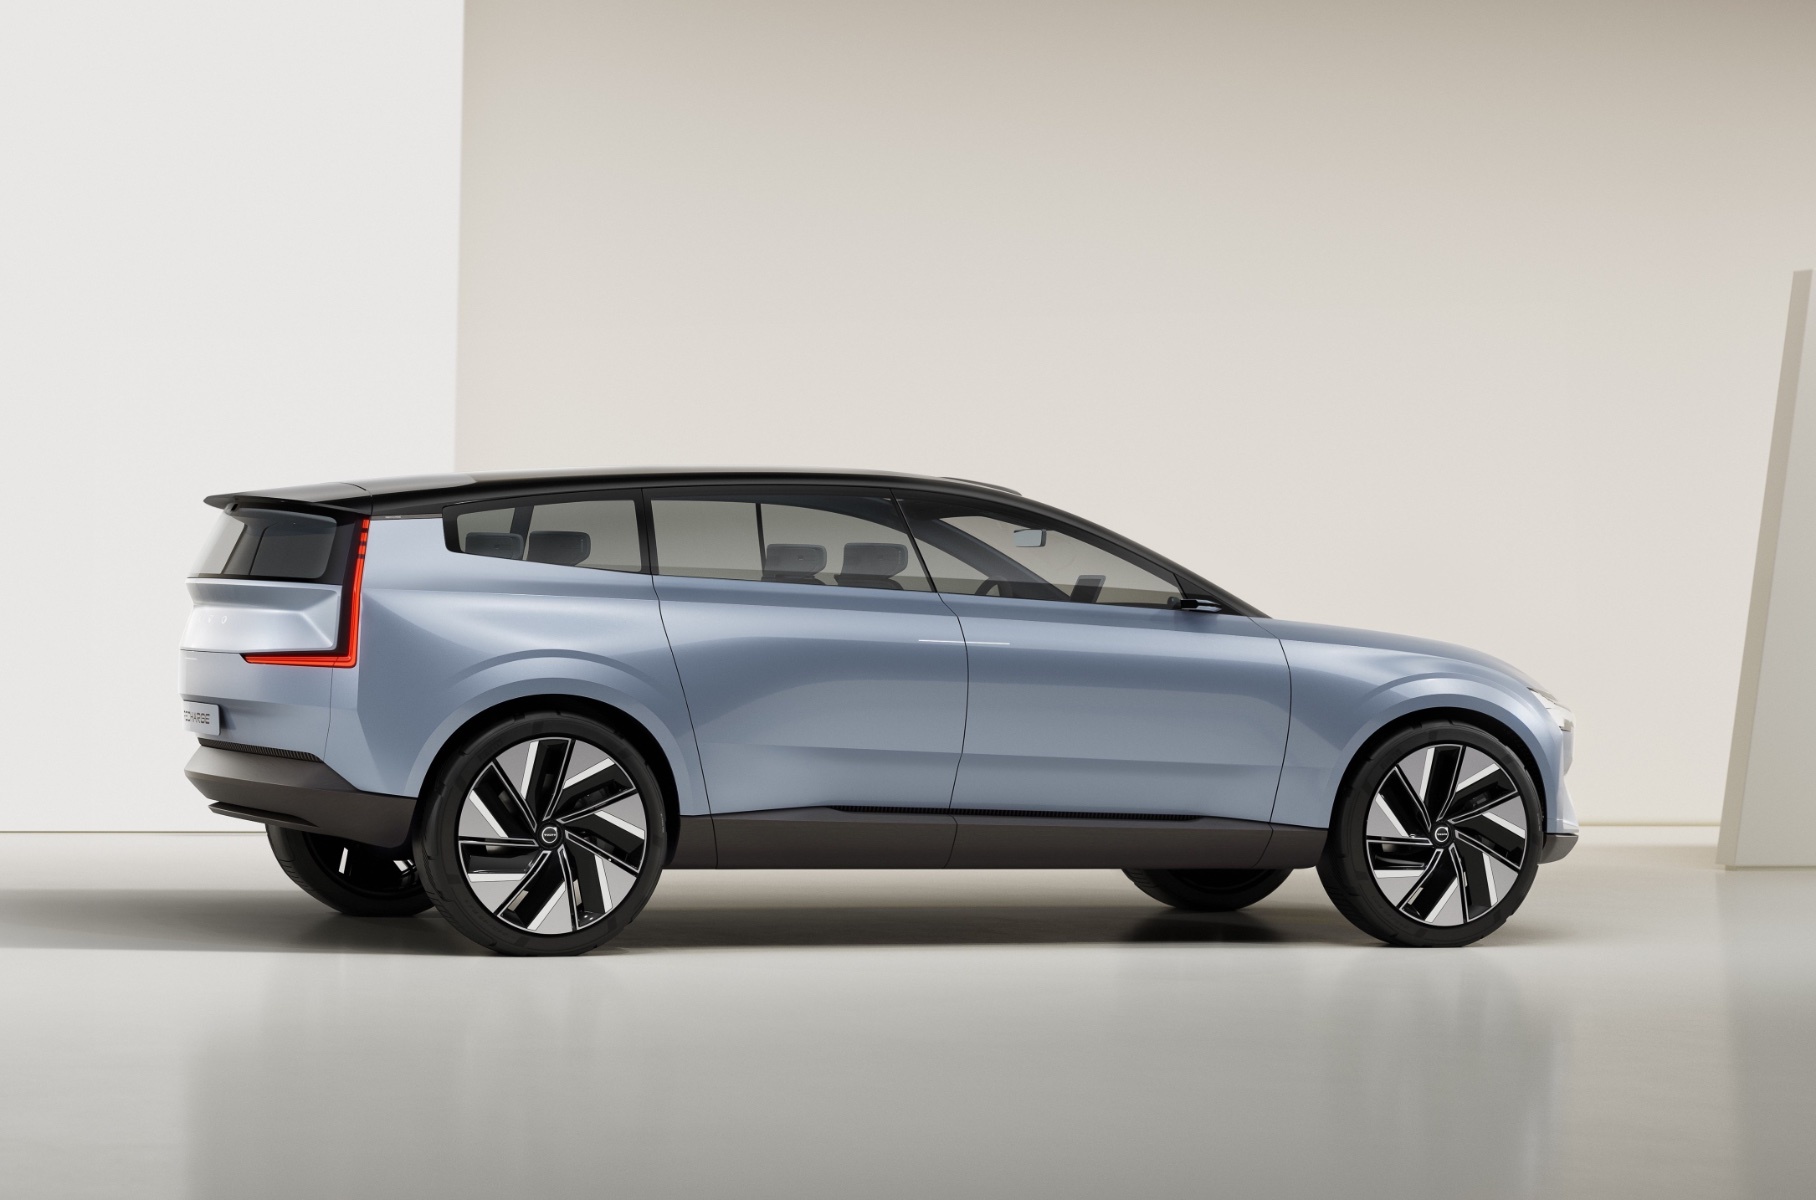 Volvo показала предвестника будущей линейки электромобилей